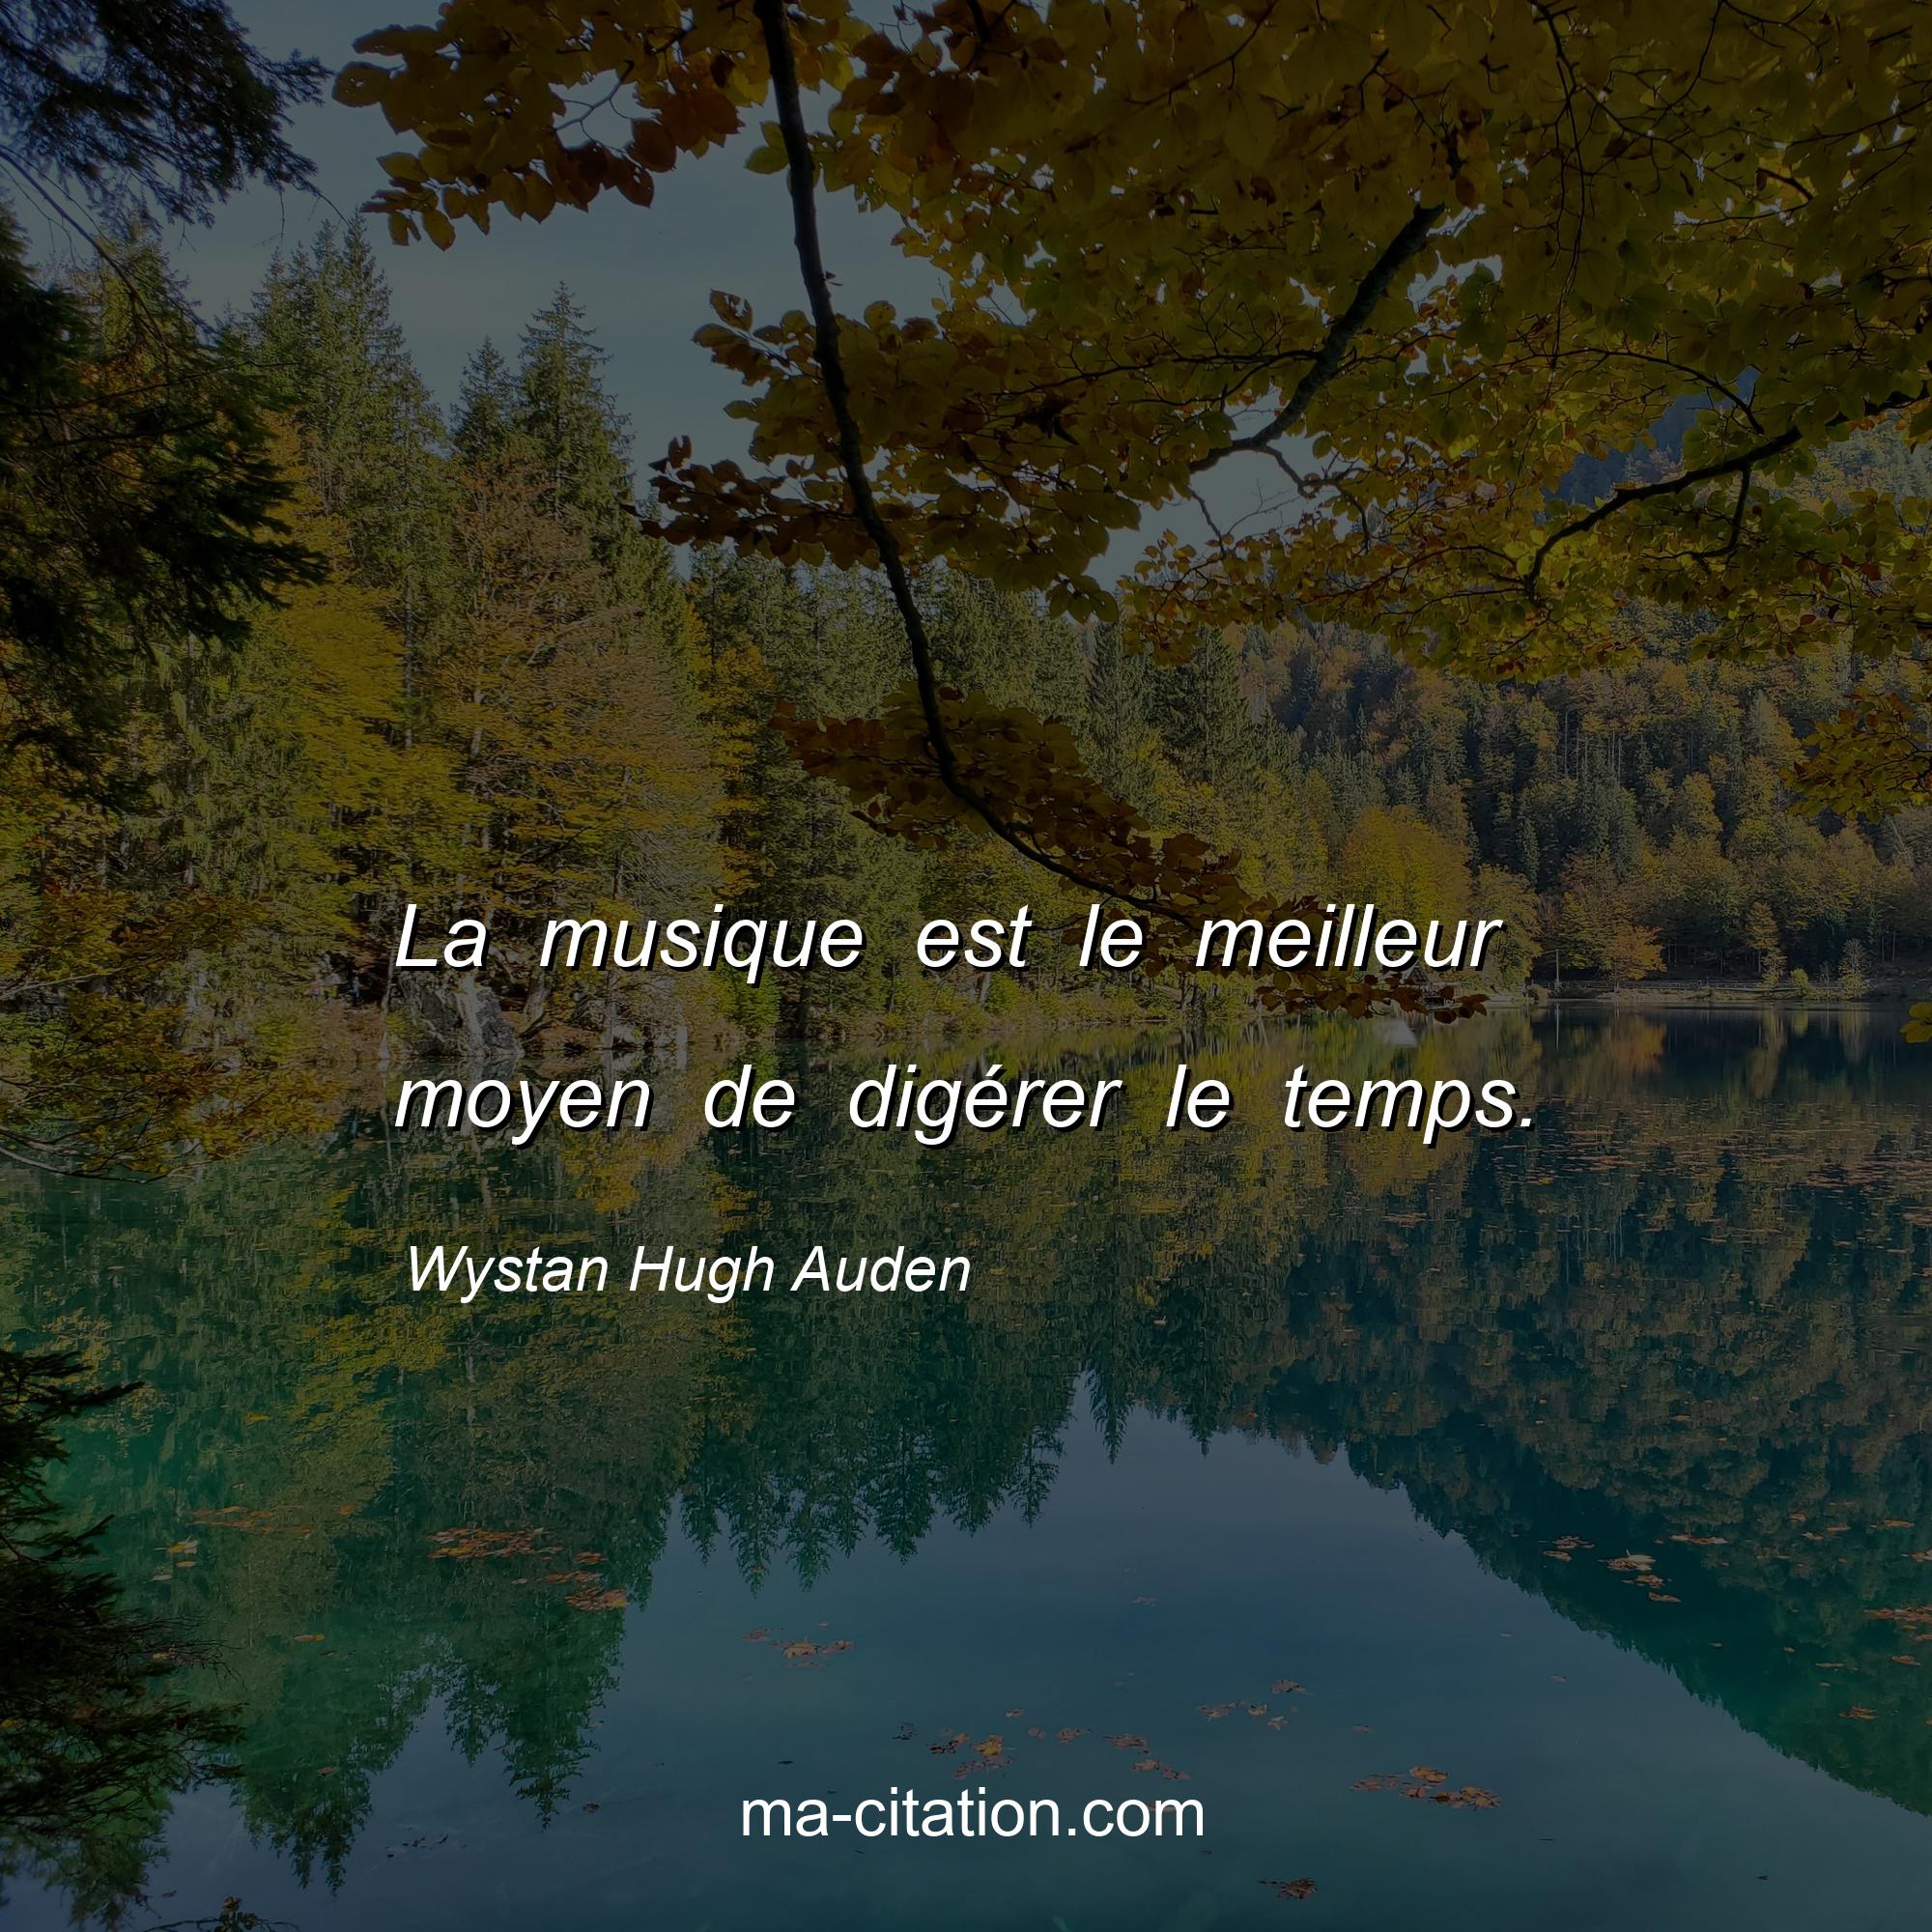 Wystan Hugh Auden : La musique est le meilleur moyen de digérer le temps.